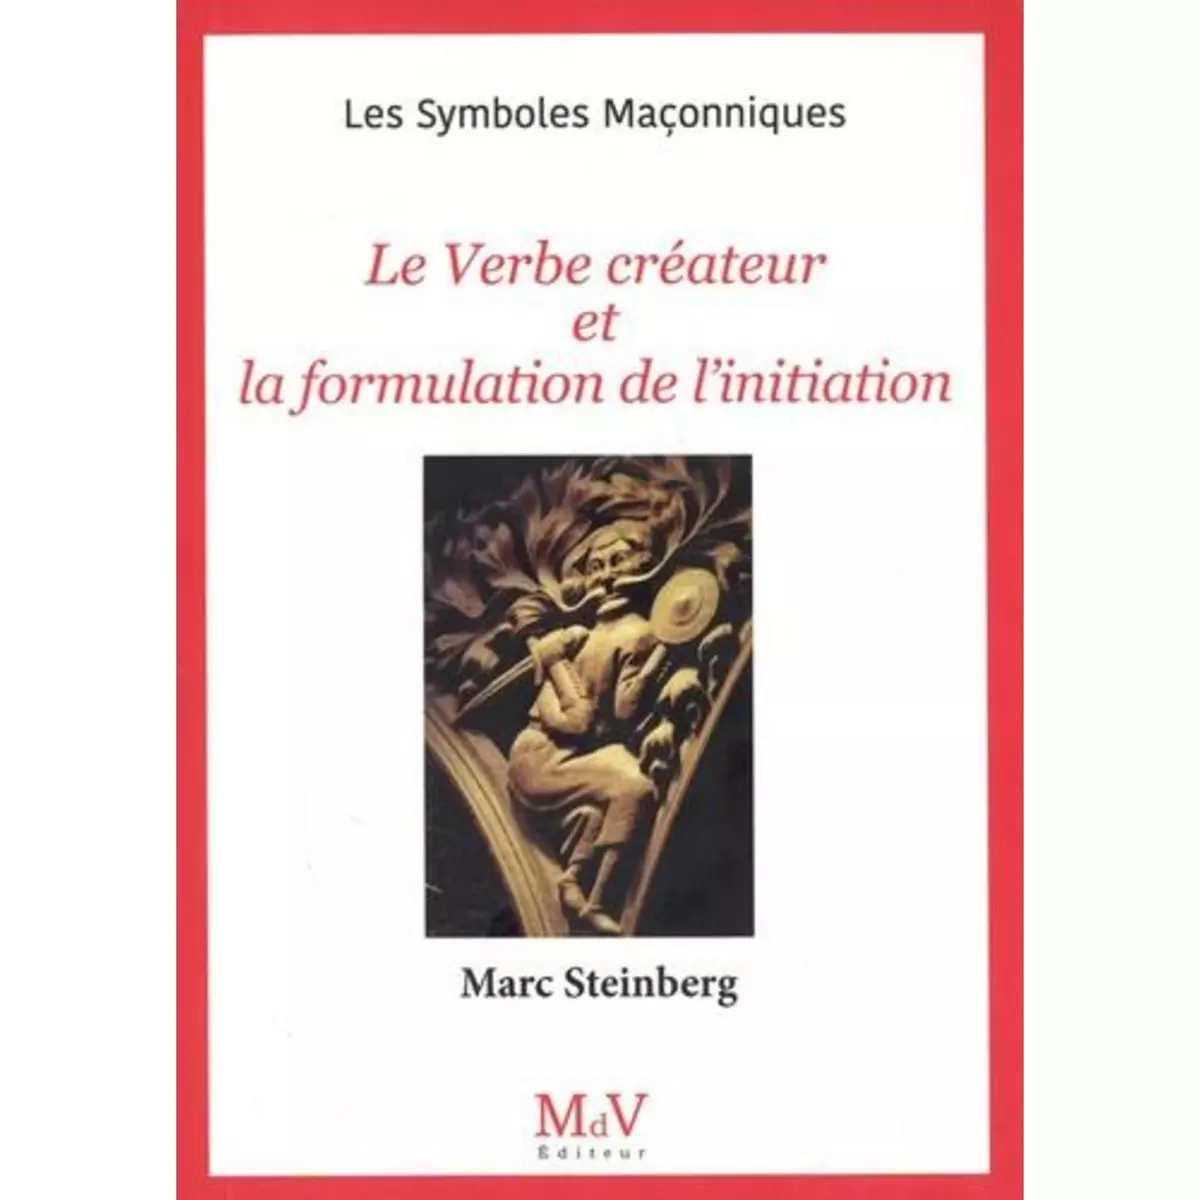  LE VERBE CREATEUR ET LA FORMULATION DE L'INITIATION, Steinberg Marc